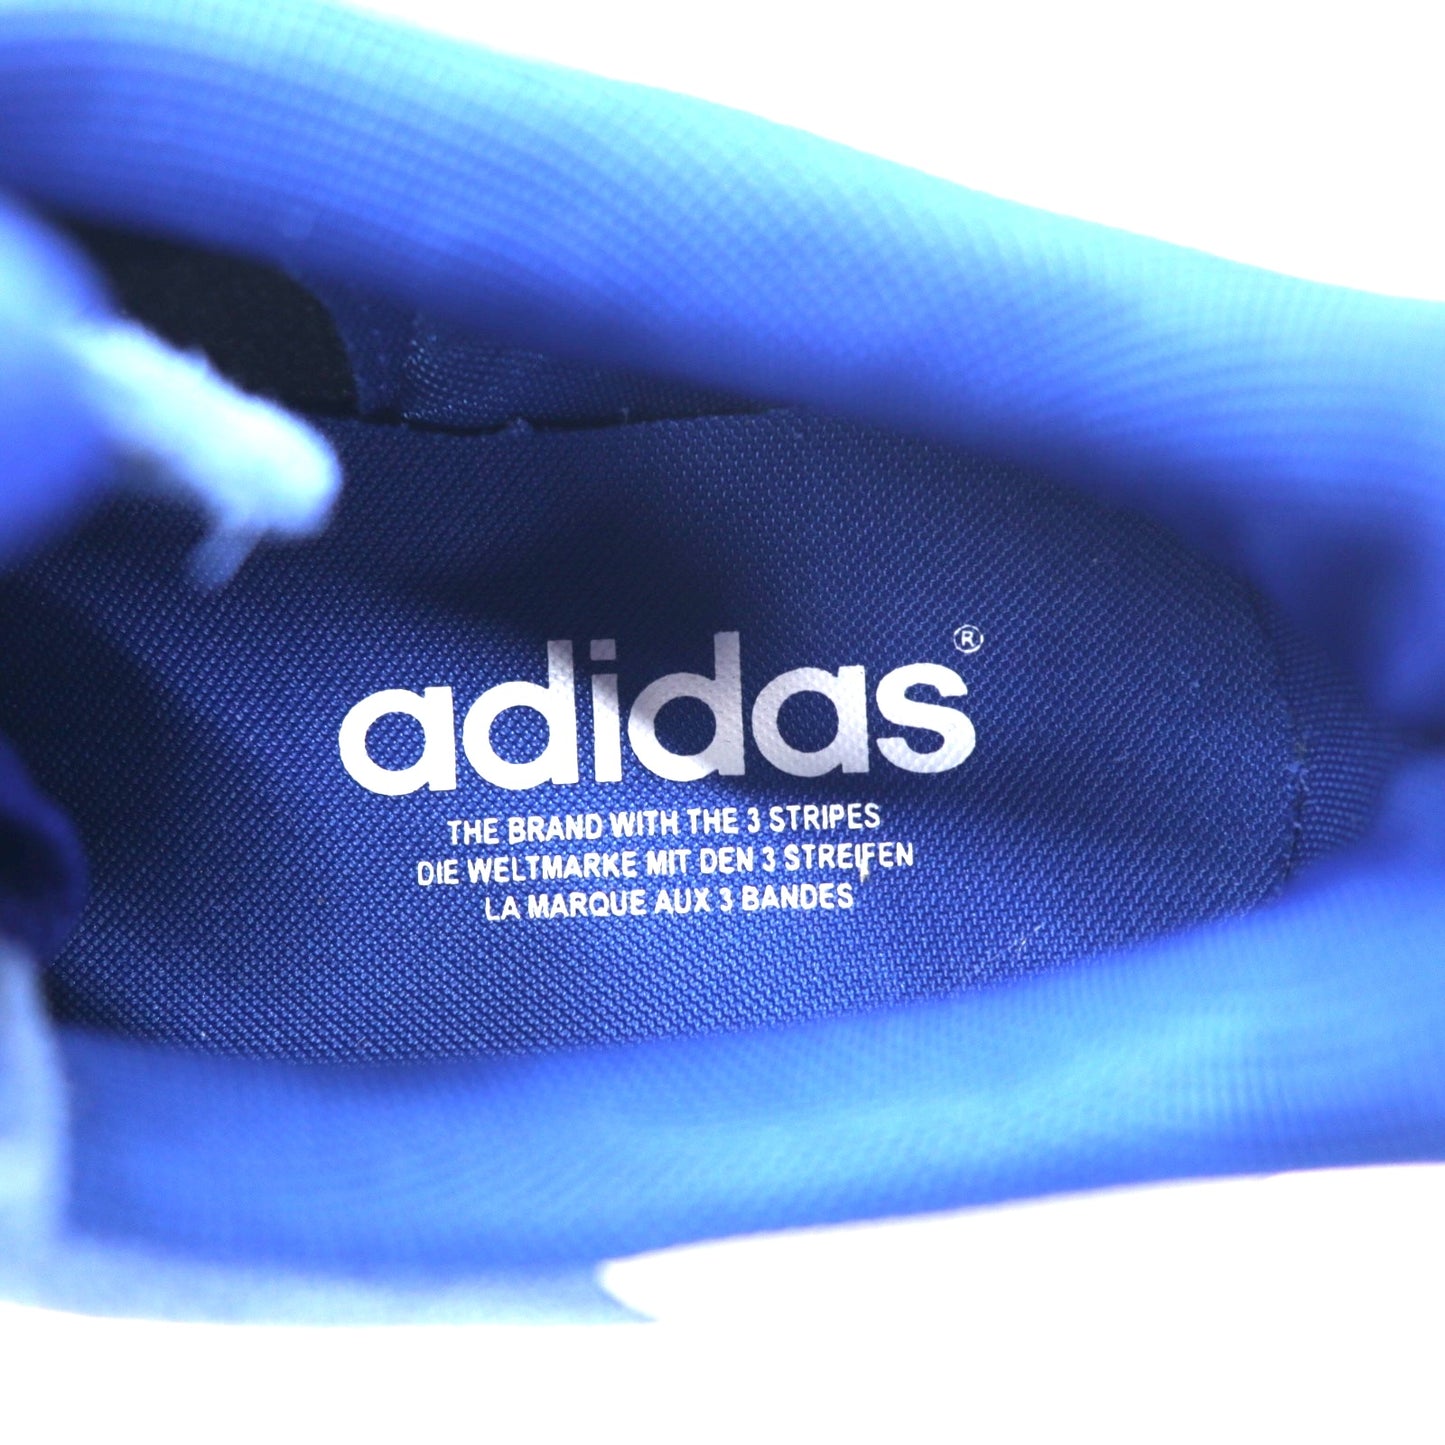 adidas originals キャンパス スニーカー 28.5cm ブルー スエードレザー CAMPUS G06026 未使用品